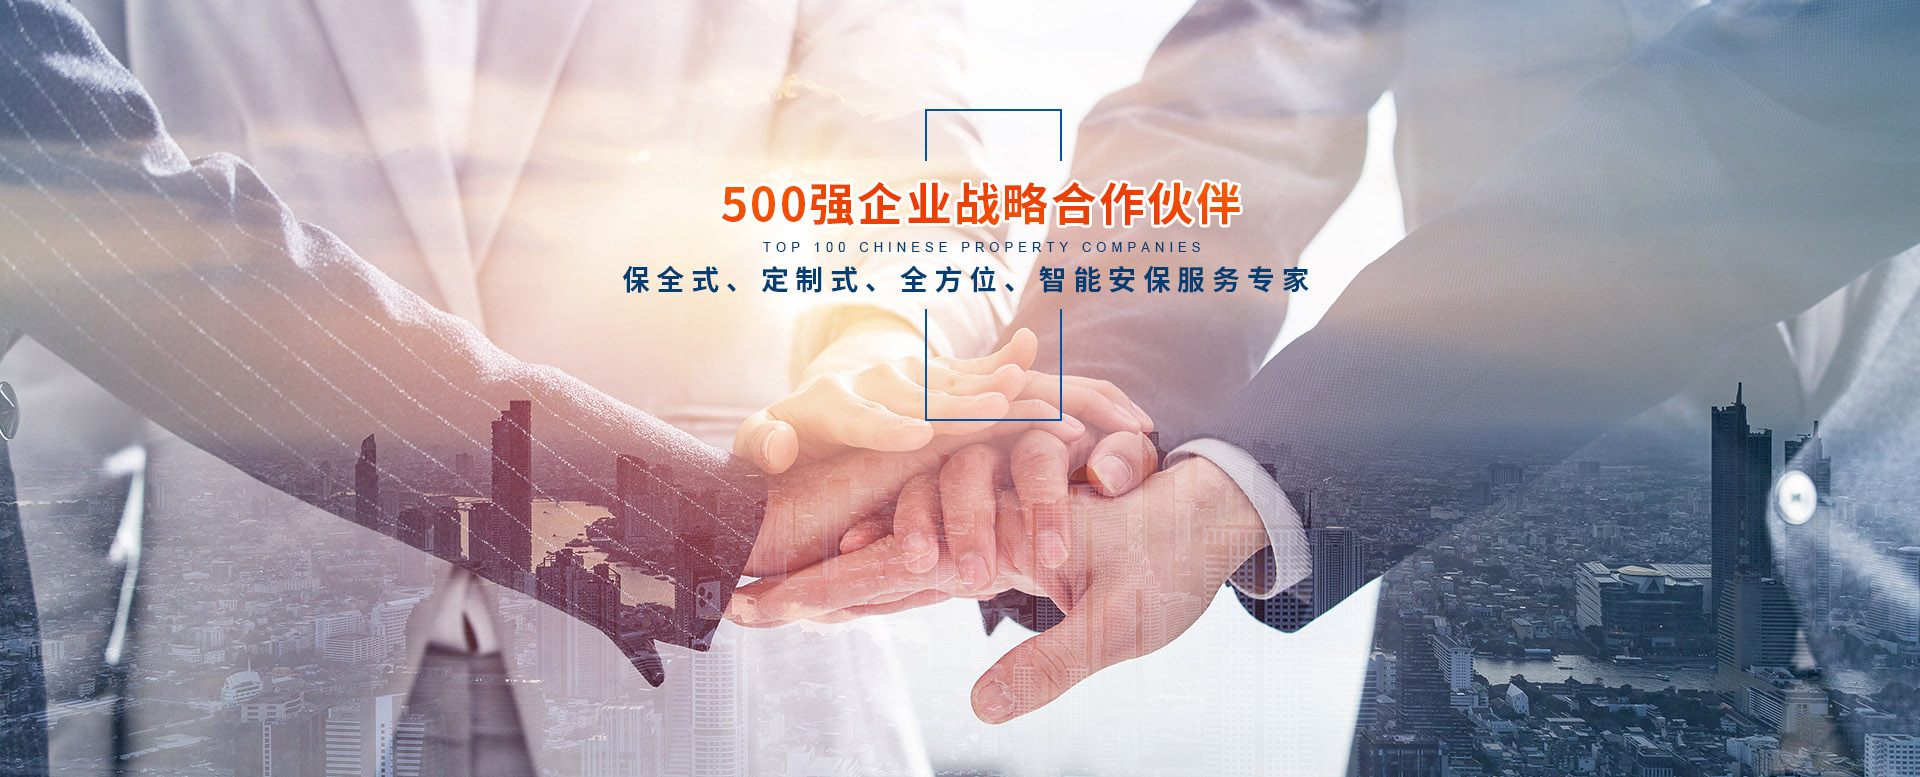 武汉同宁保安服务有限公司专注提供全方位智能化弱电系统解决方案，与世界500强企业初步建立战略合作伙伴关系，可提供了全方位的保全式优质保安服务。